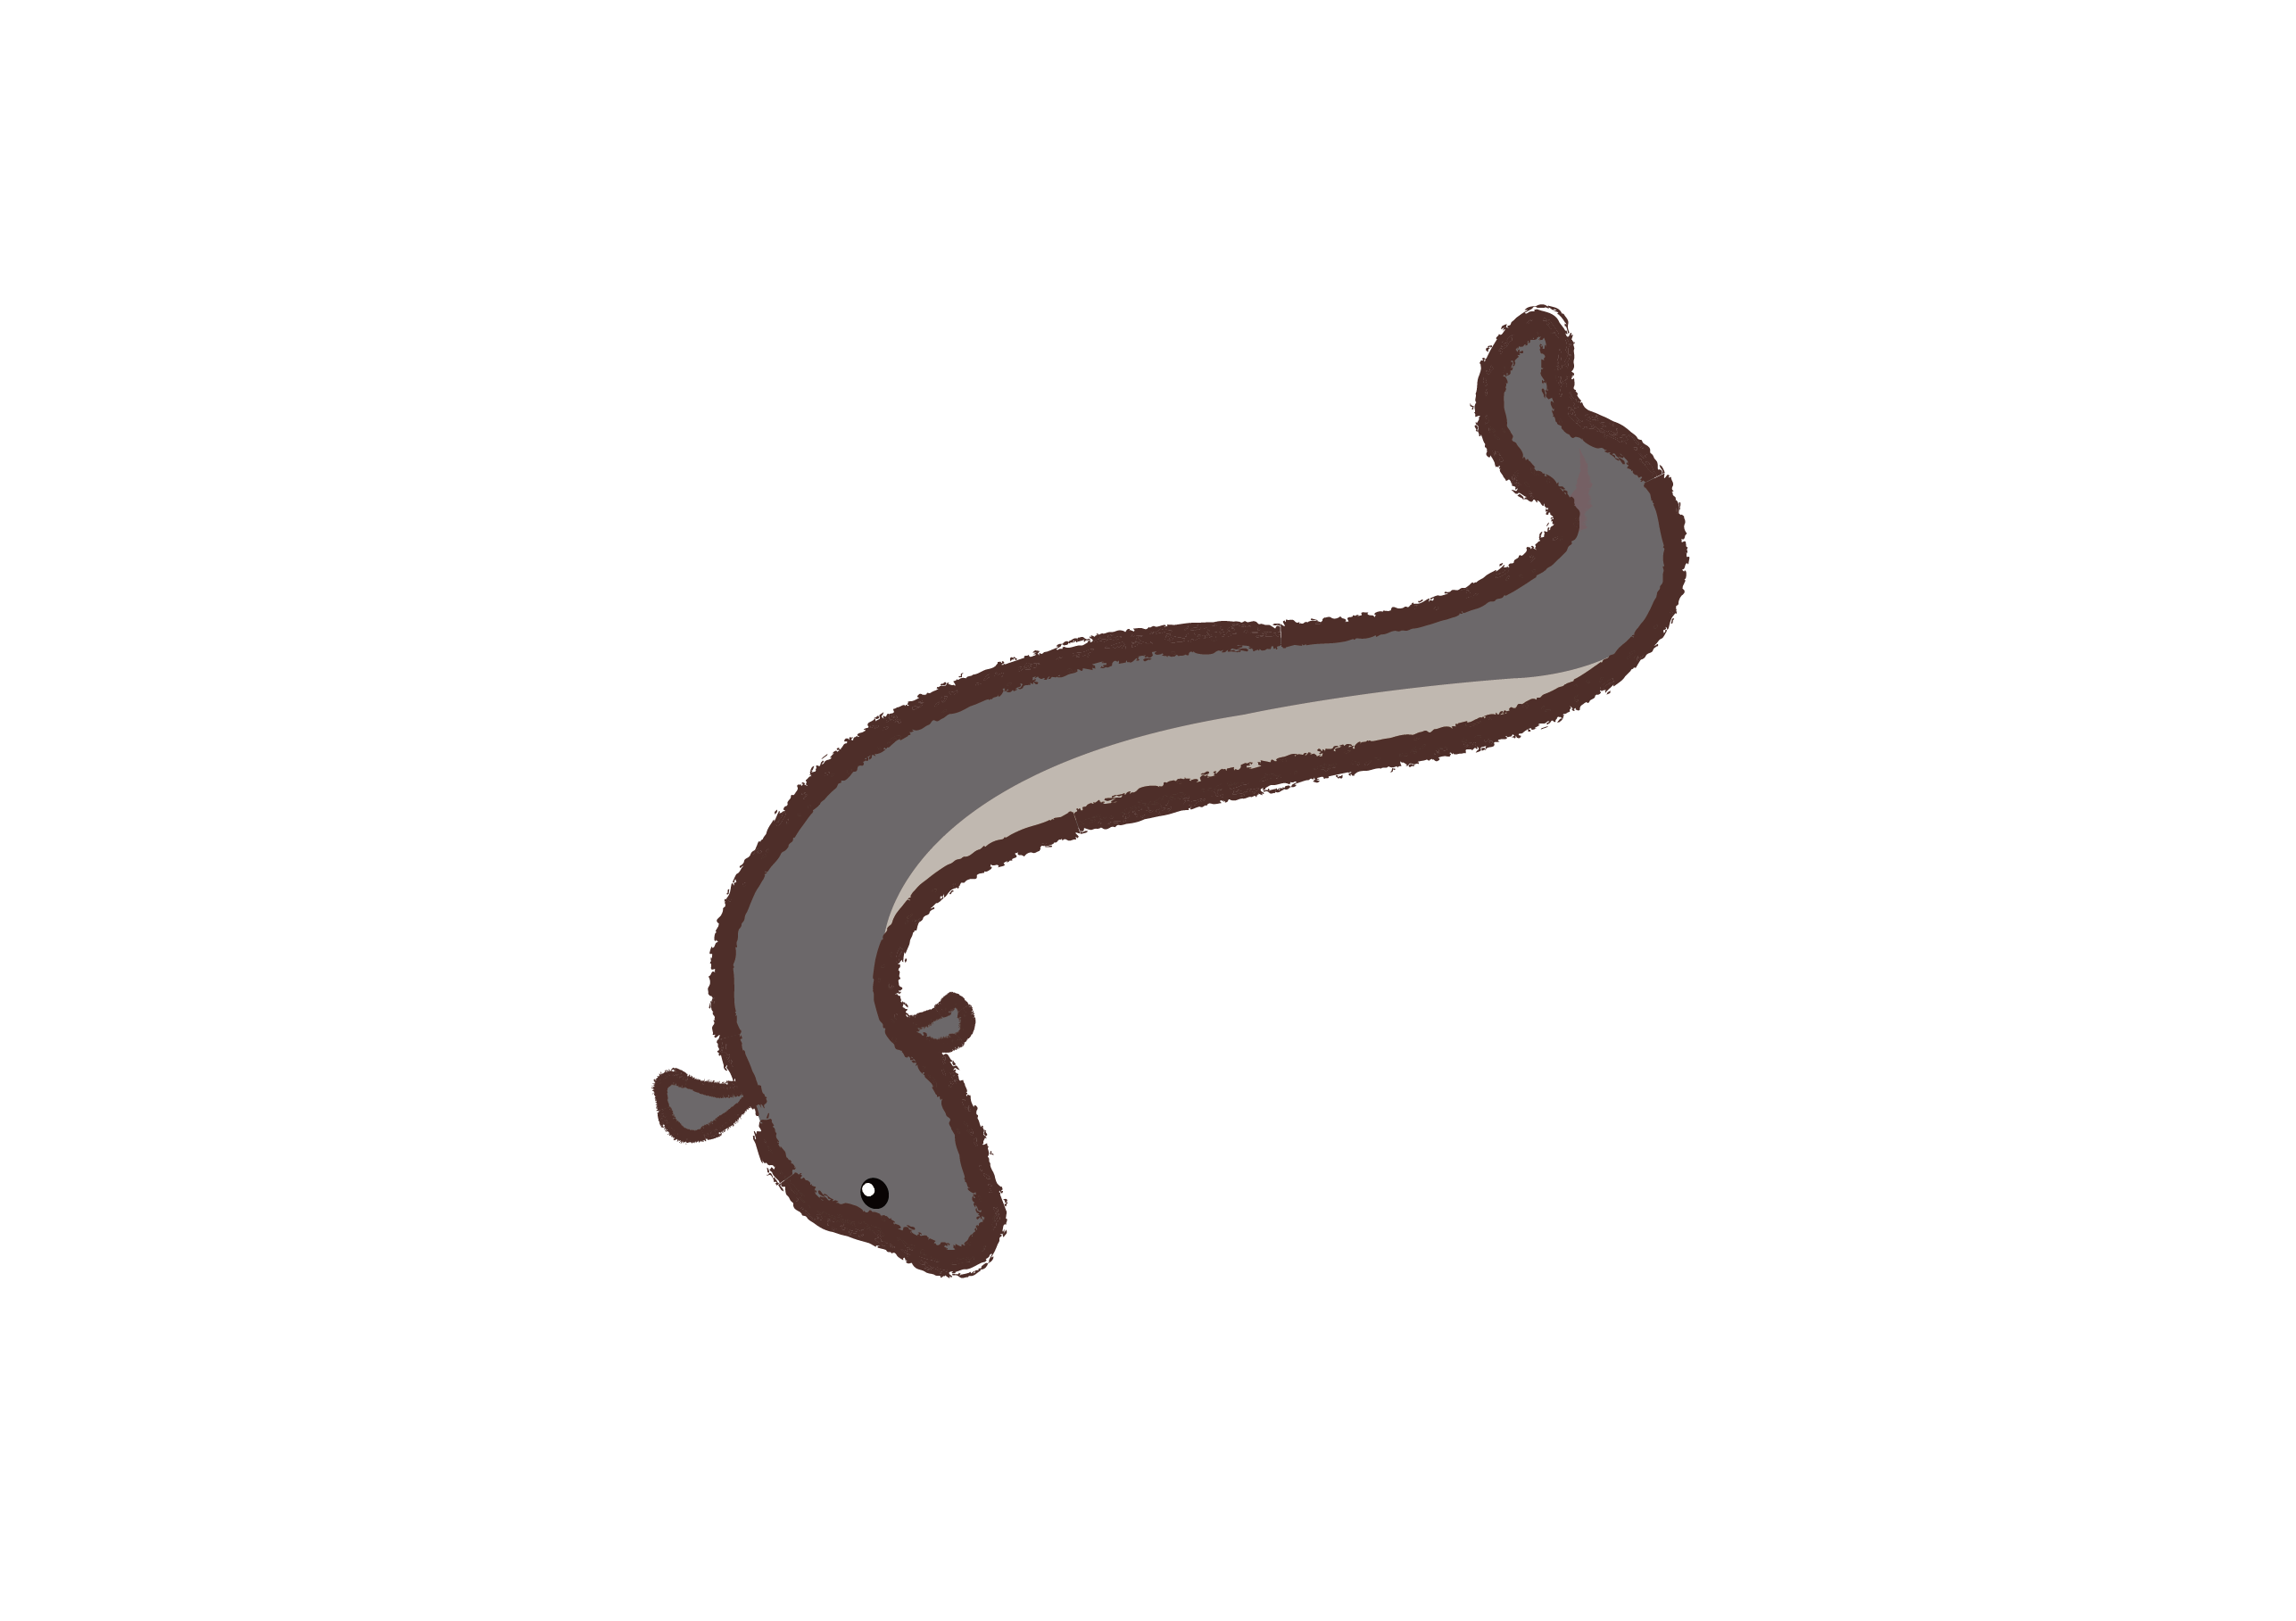 西里伯斯鳗鲡:是鳗鲡属辐鳍鱼纲鳗鲡目鳗鲡亚目鳗鲡科一种降河性洄游